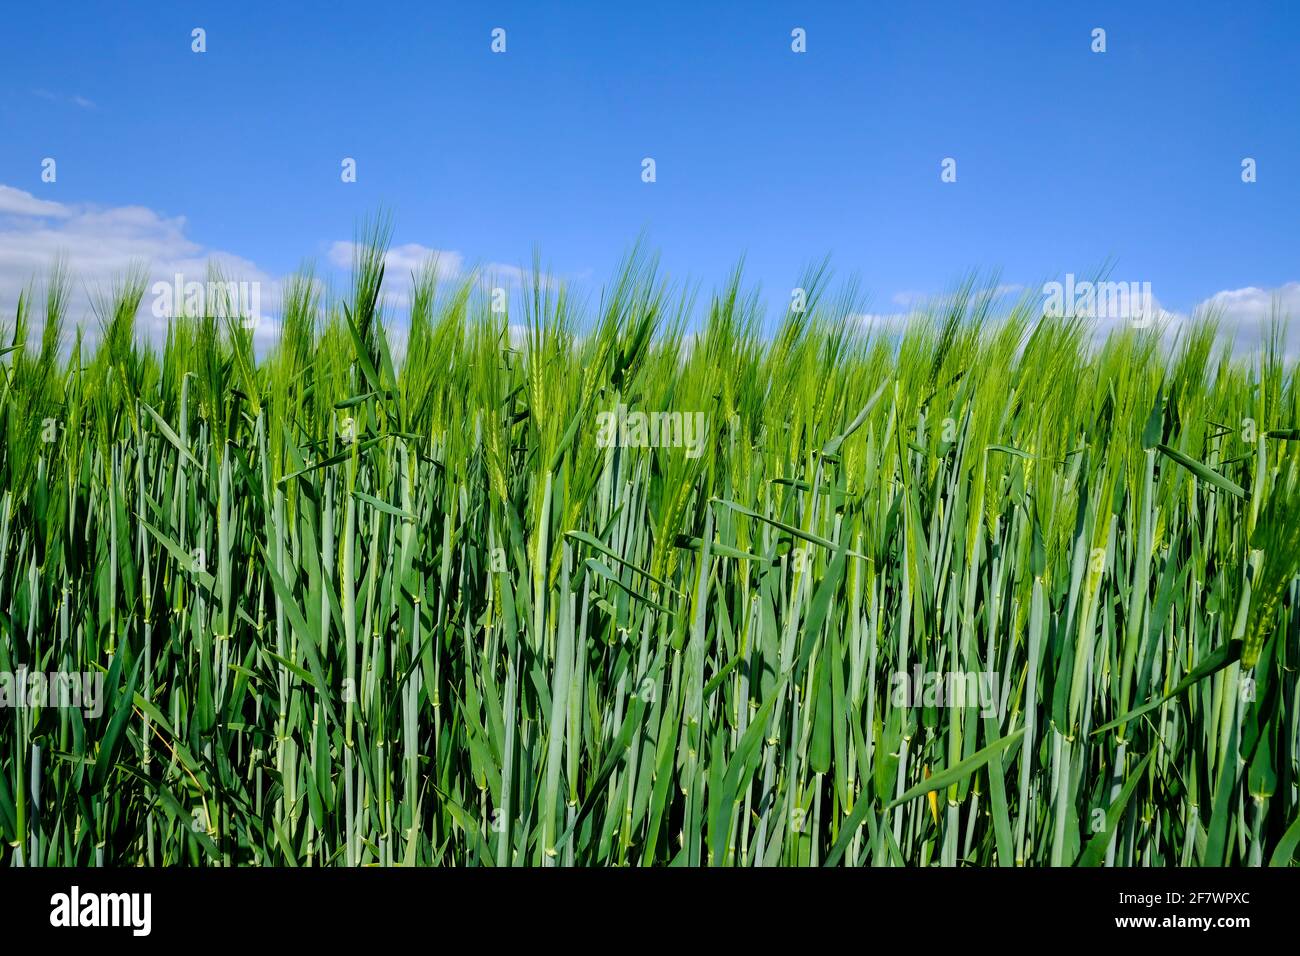 11.05.2020, Essen, Ruhrgebiet, Nordrhein-Westfalen, Deutschland - junger Roggen im Fruehling auf einem Feld in Essen-Kettwig Stock Photo